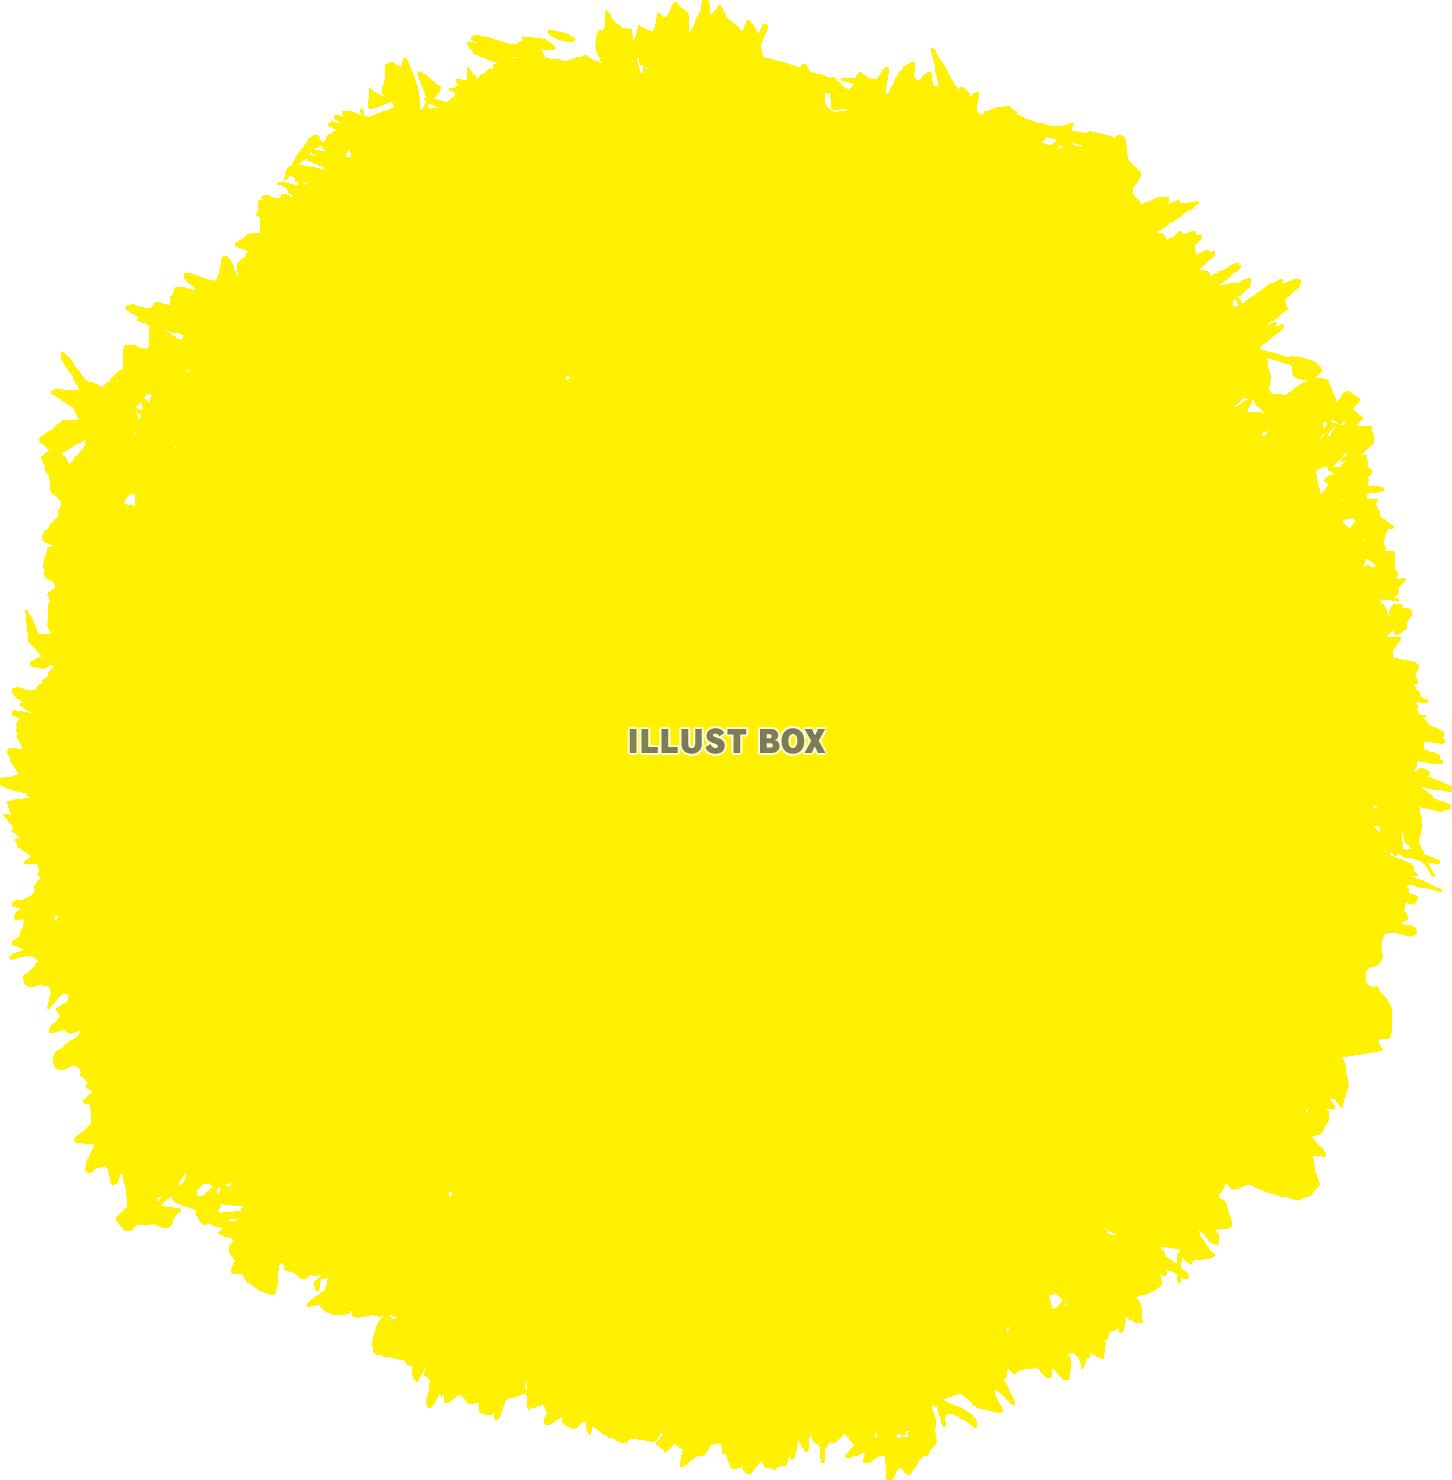 無料イラスト 水彩黄色イラスト枠円飾り丸背景おしゃれフレーム枠アイコン手描